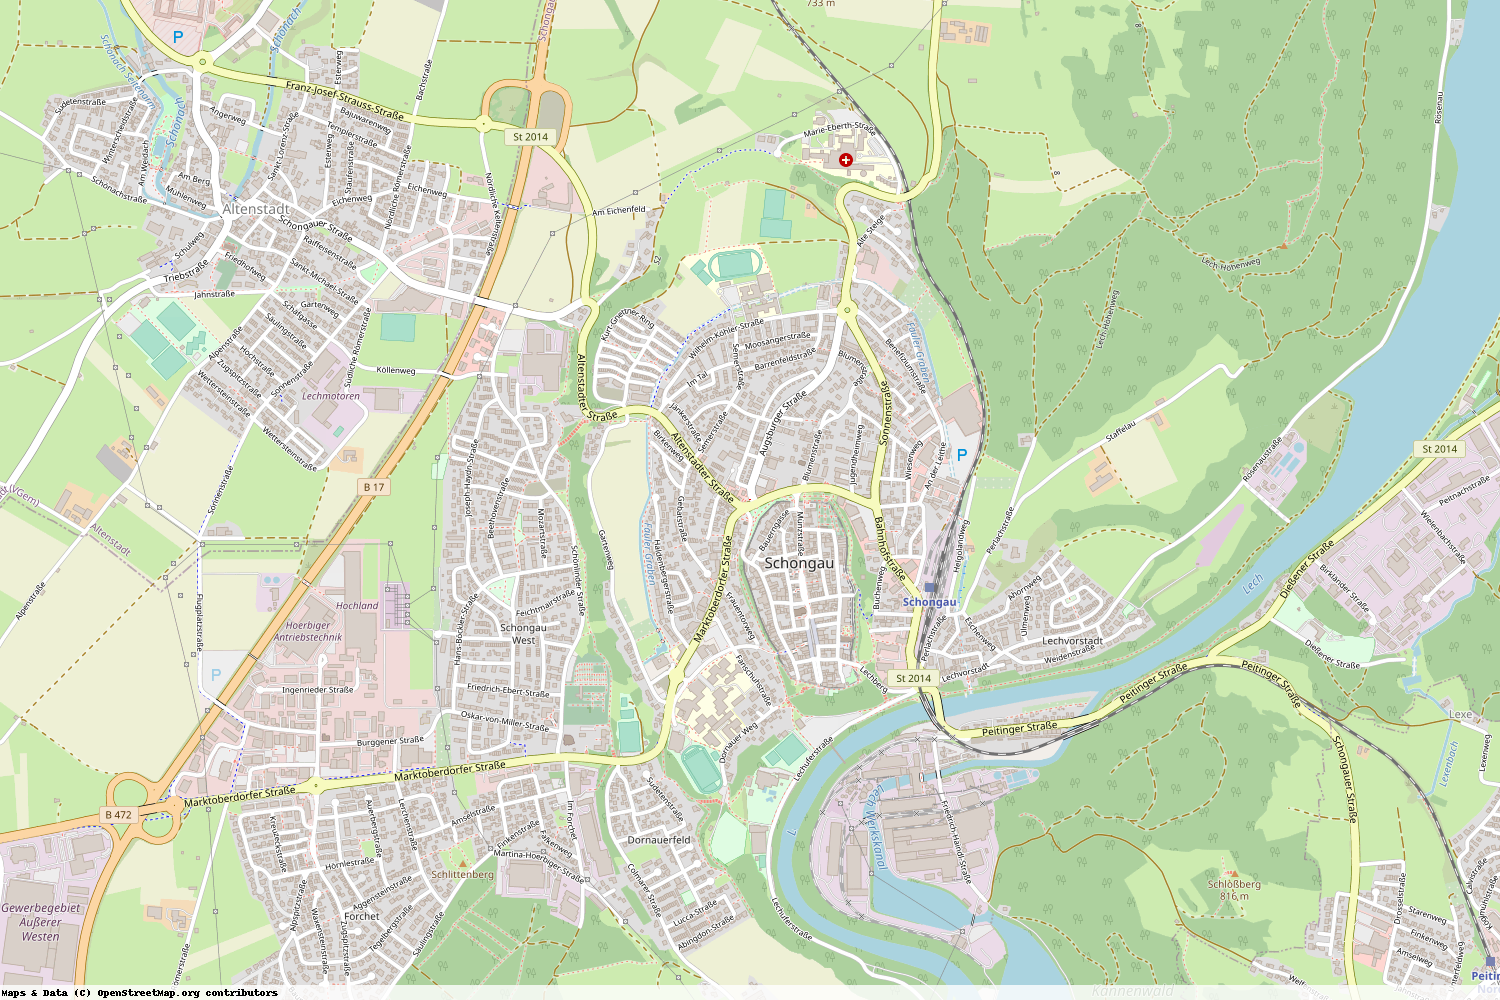 Ist gerade Stromausfall in Bayern - Weilheim-Schongau - Schongau?